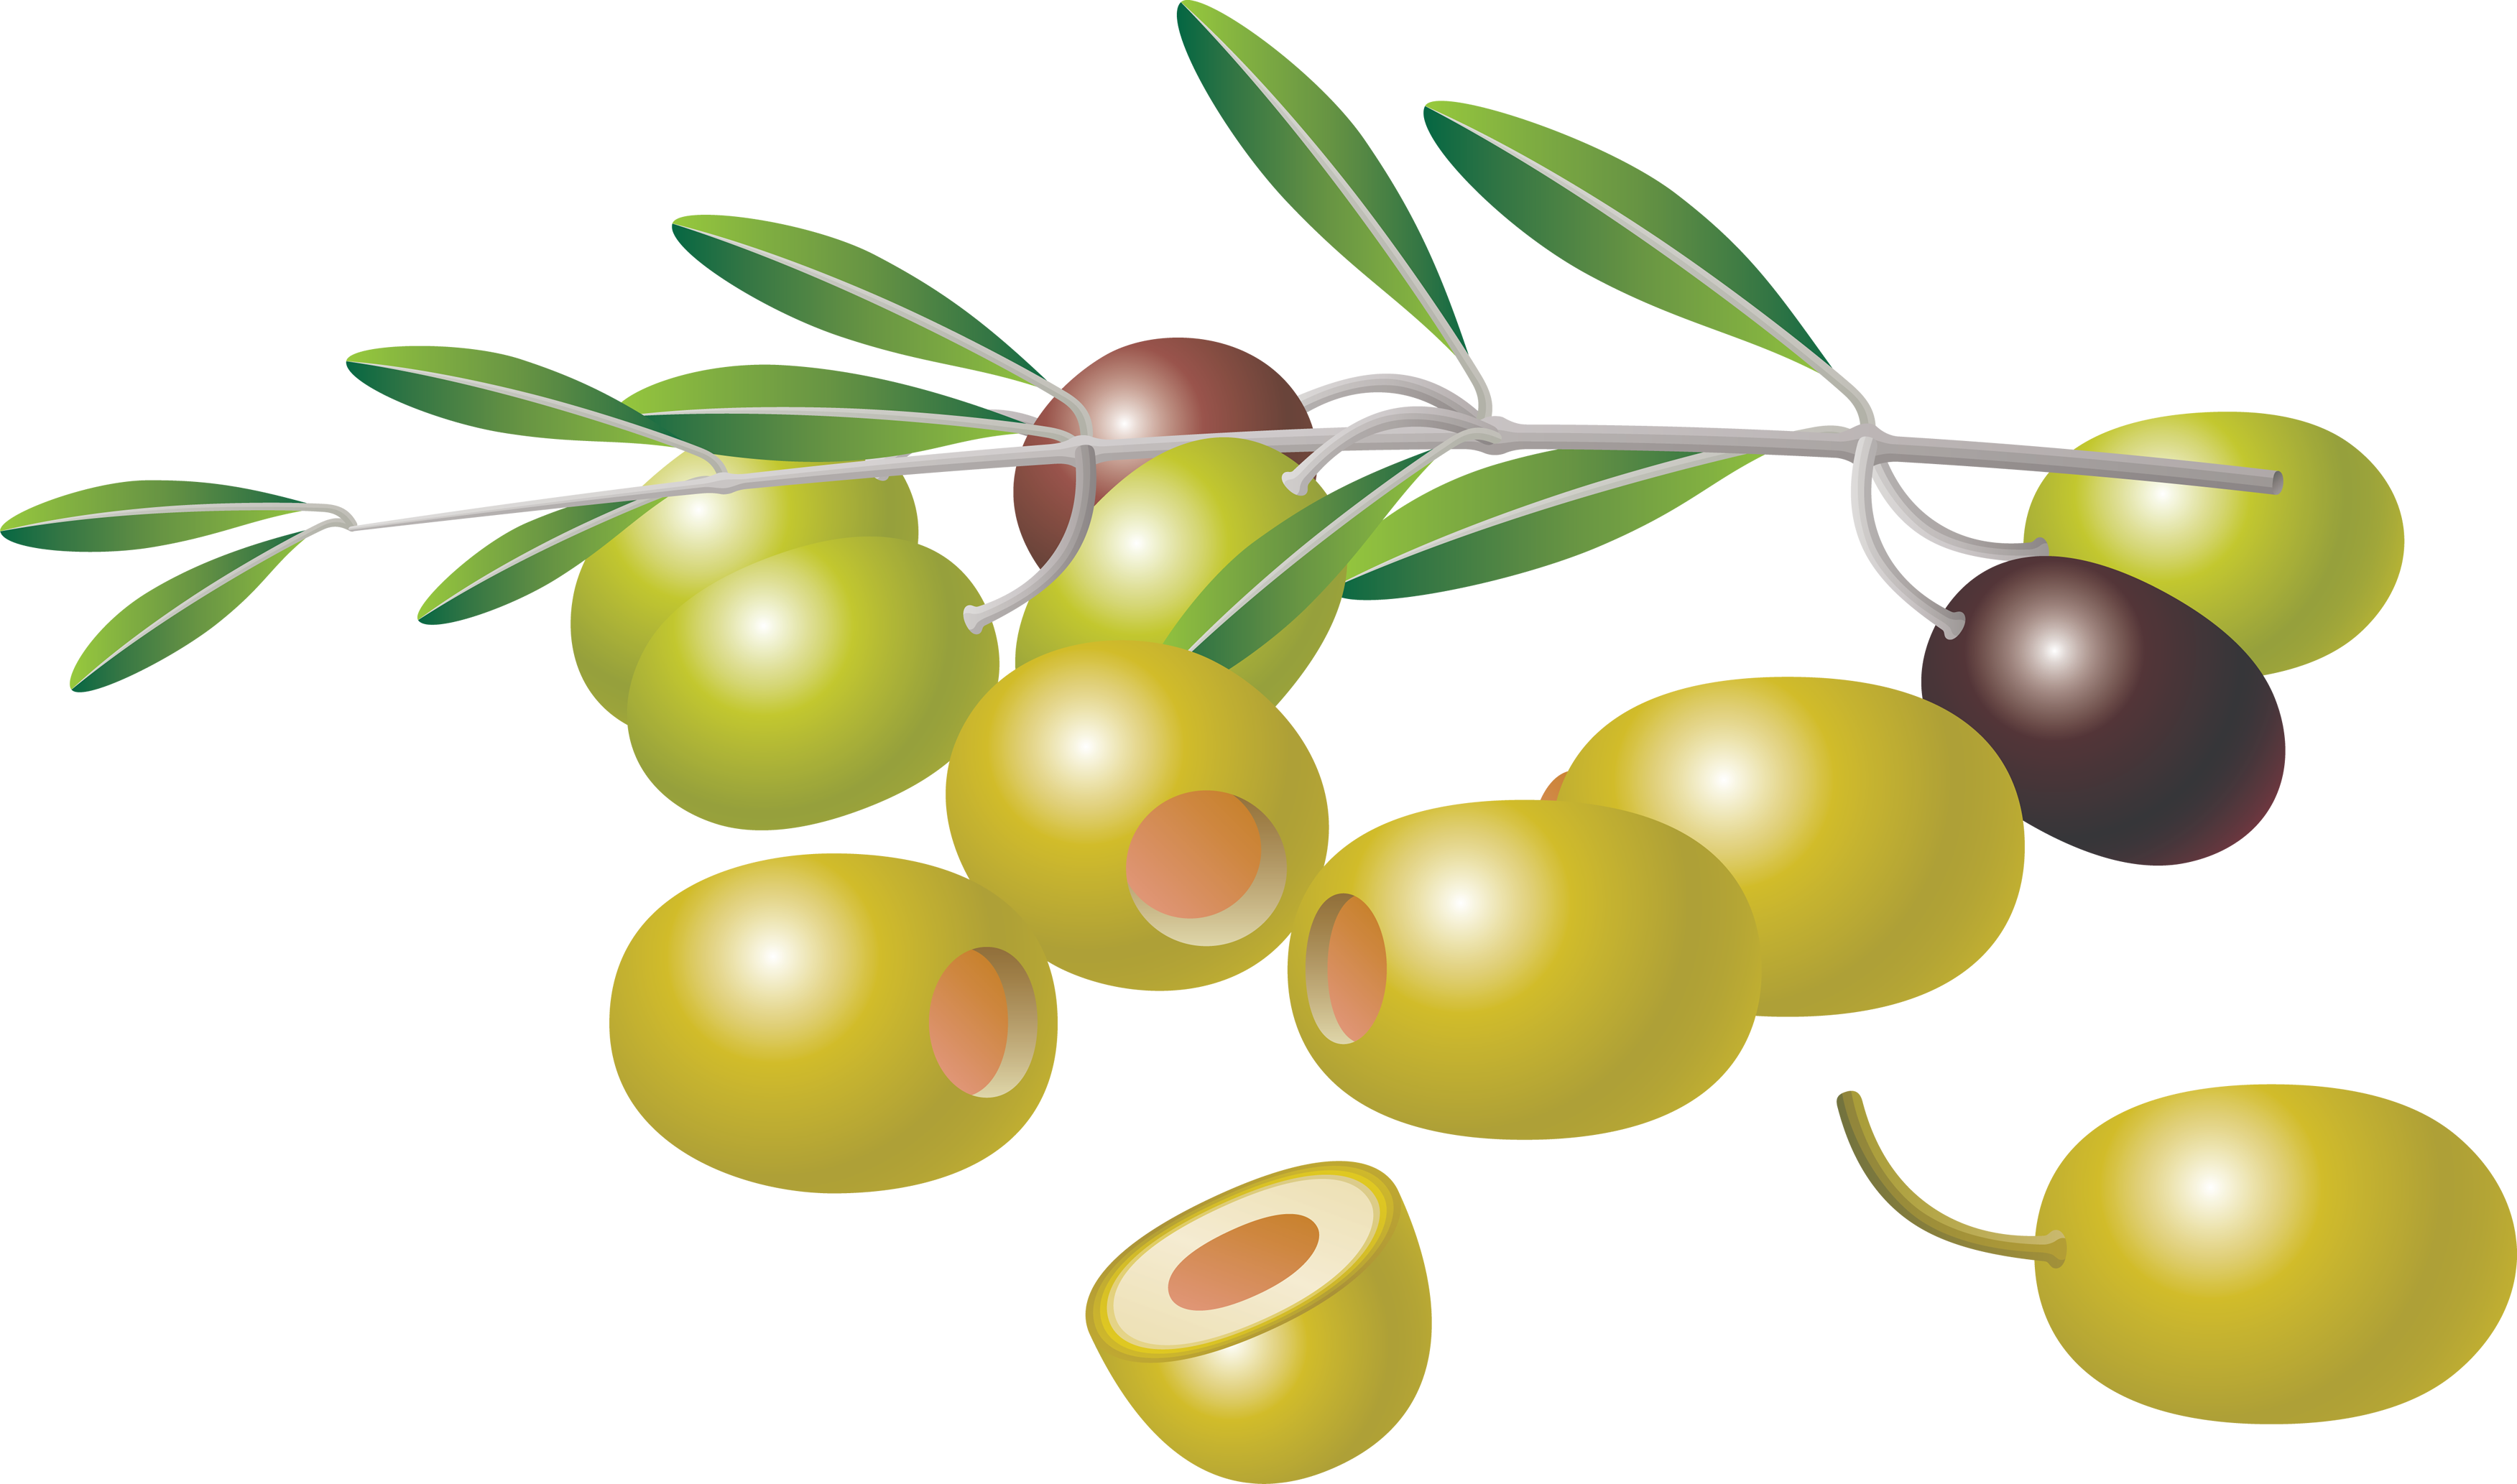 olives, olive png images download crazypngm crazy png images download #30061